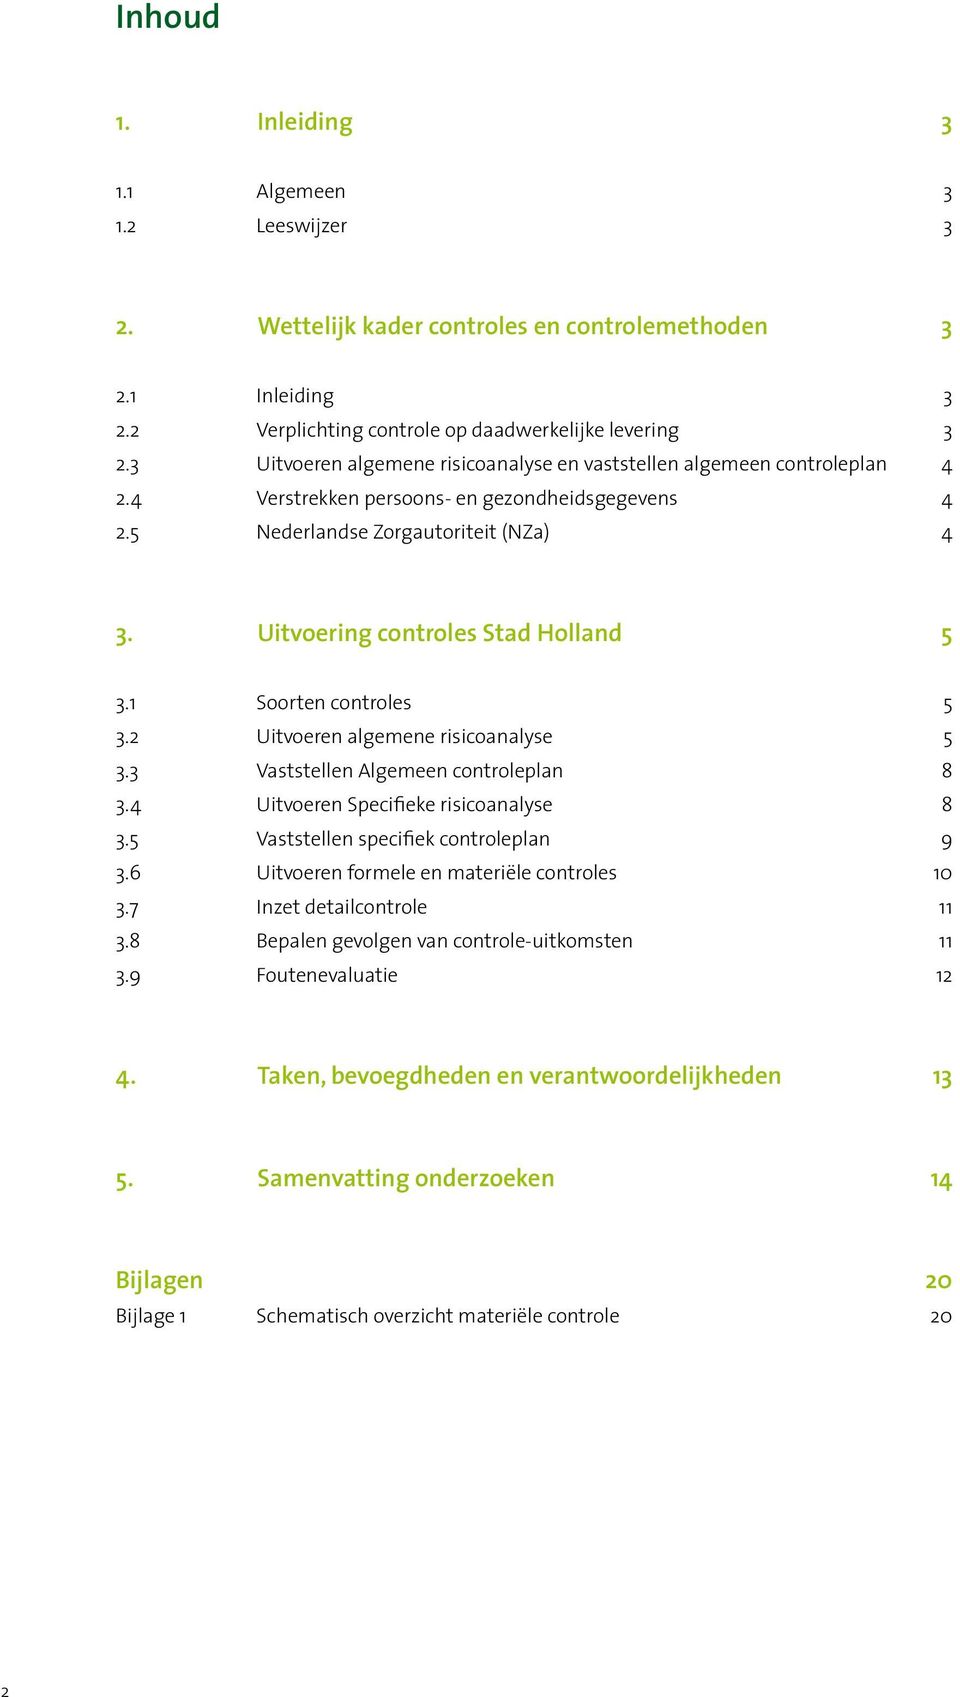 Uitvoering controles Stad Holland 5 3.1 Soorten controles 5 3.2 Uitvoeren algemene risicoanalyse 5 3.3 Vaststellen Algemeen controleplan 8 3.4 Uitvoeren Specifieke risicoanalyse 8 3.